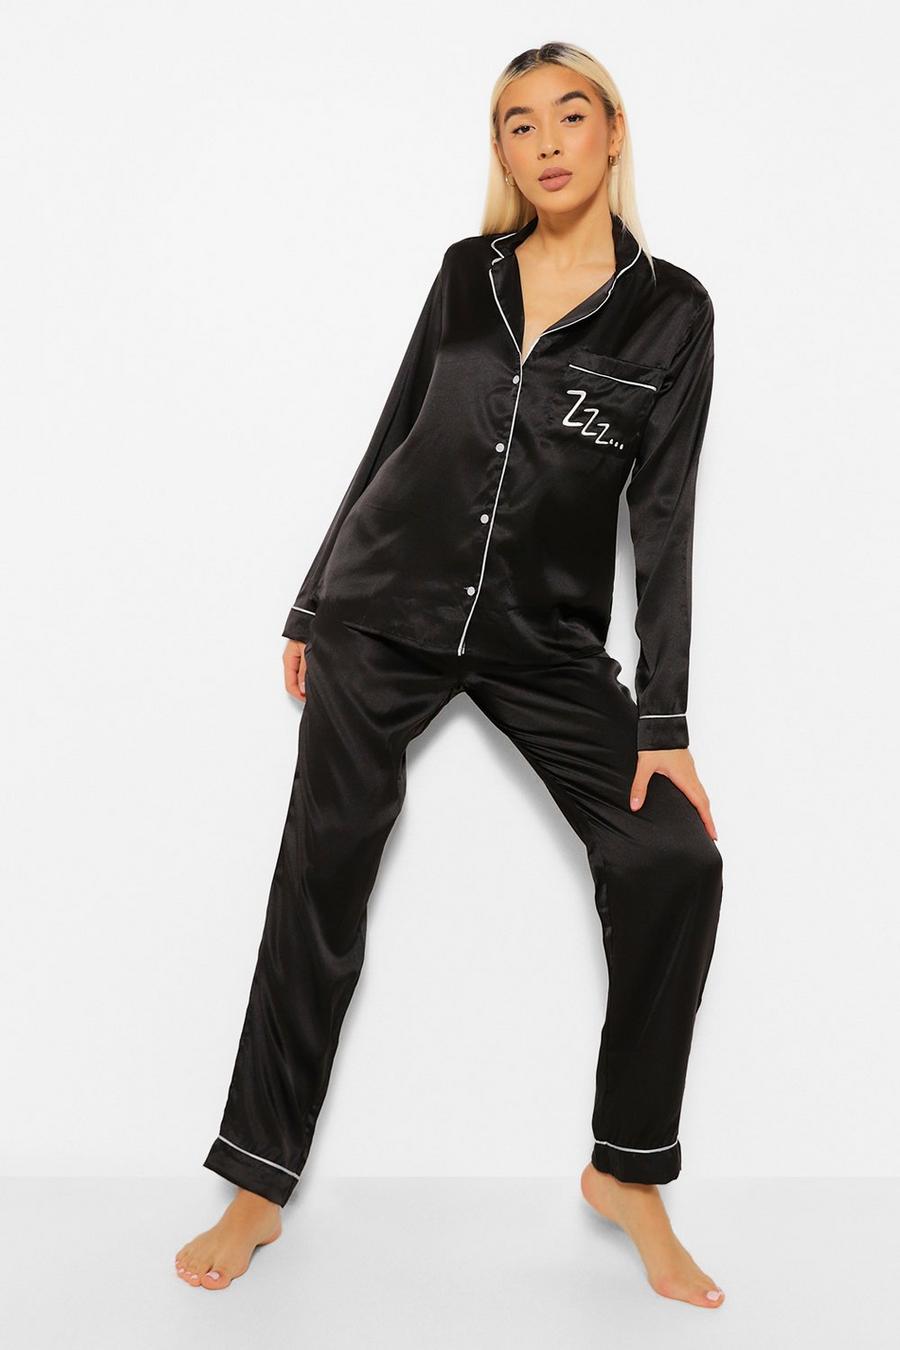 Pijama largo de raso con botones y estampado Zzz, Black negro